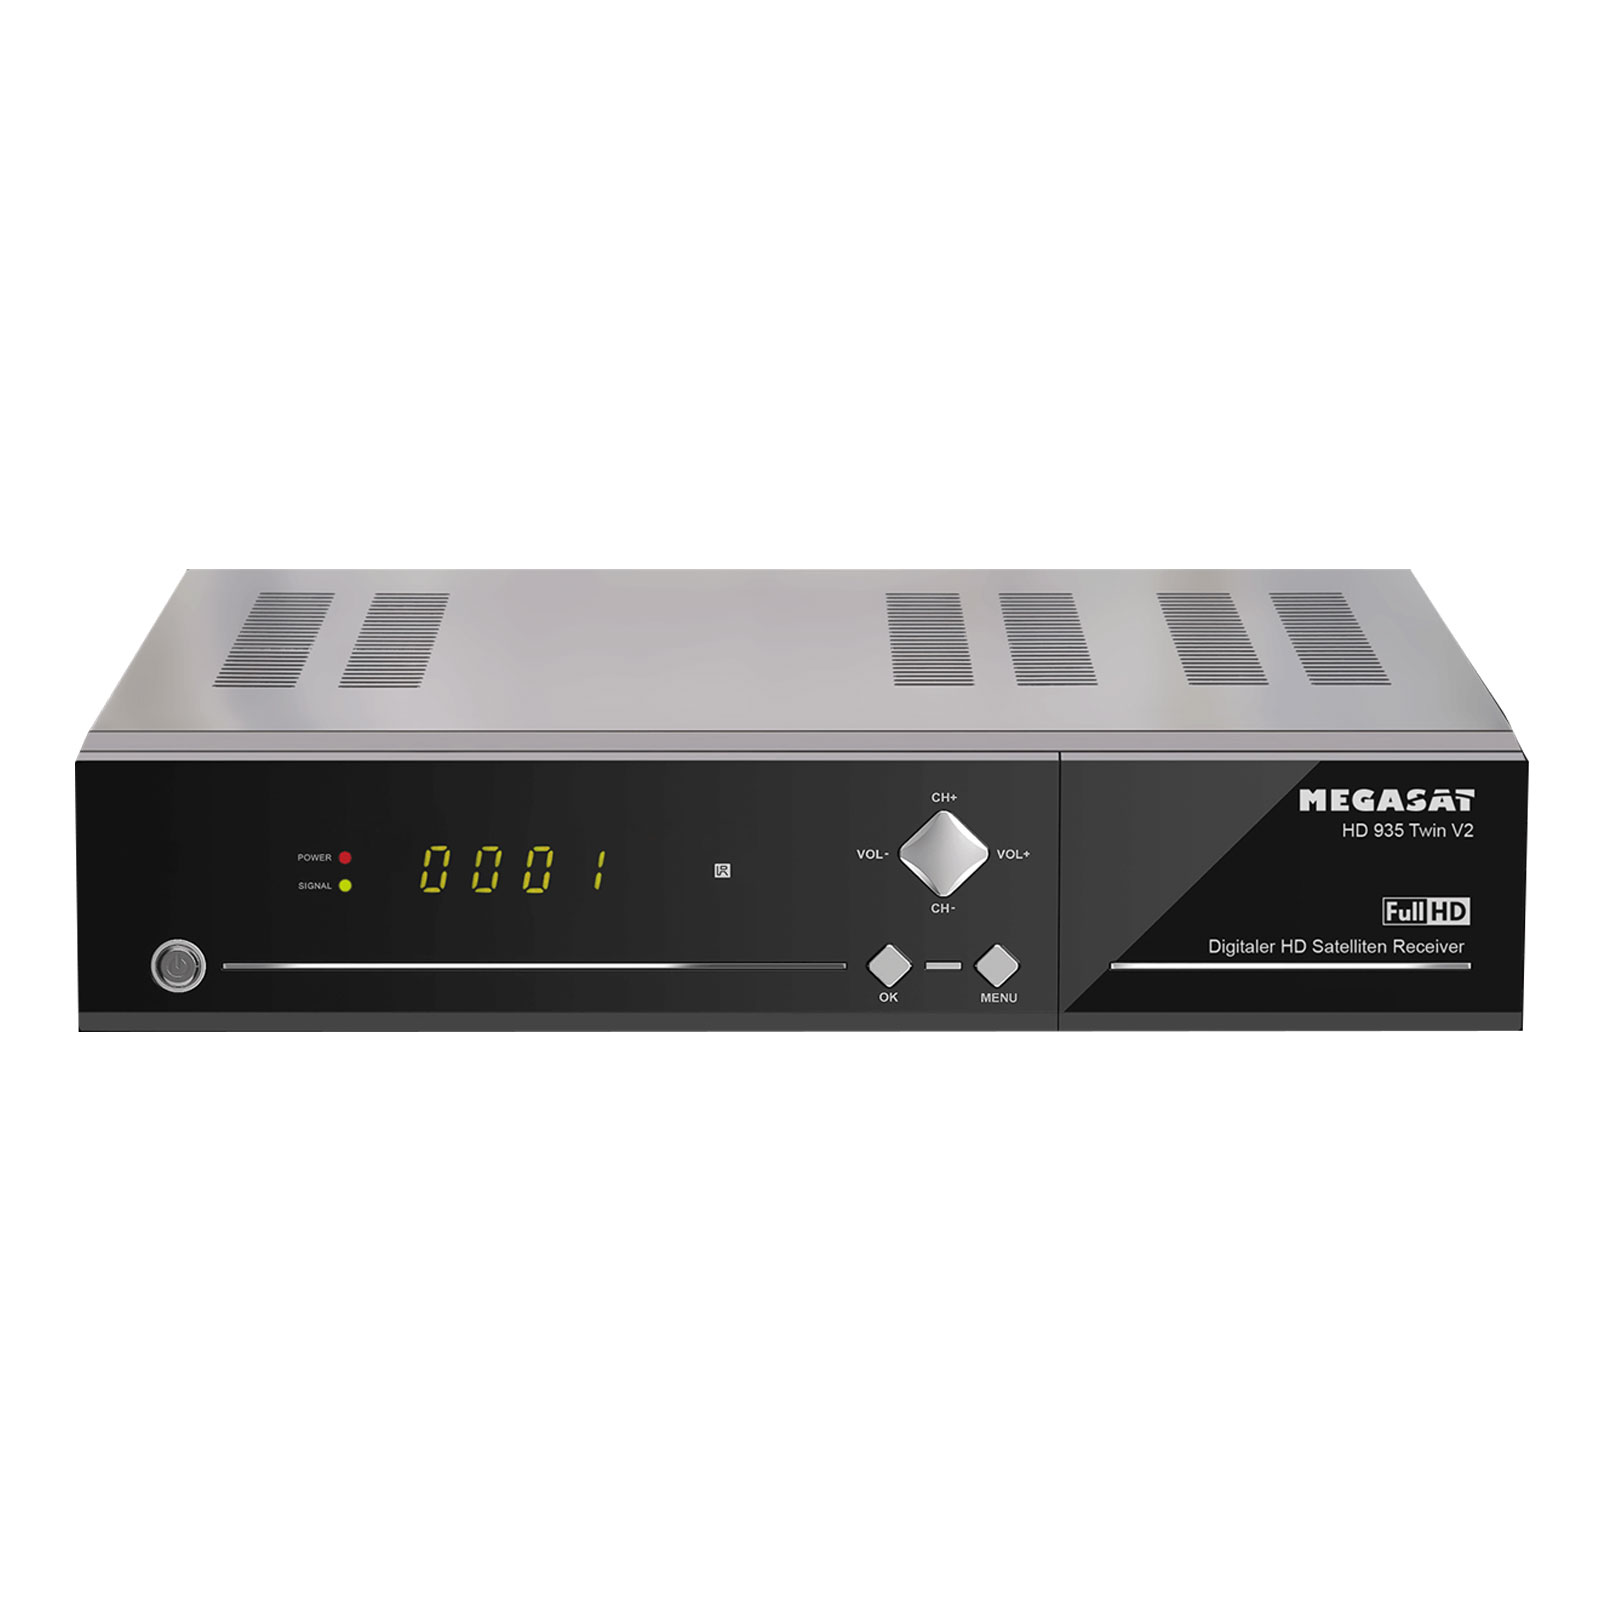 Megasat HD 935 Twin V2 mit Festplatte 1TB